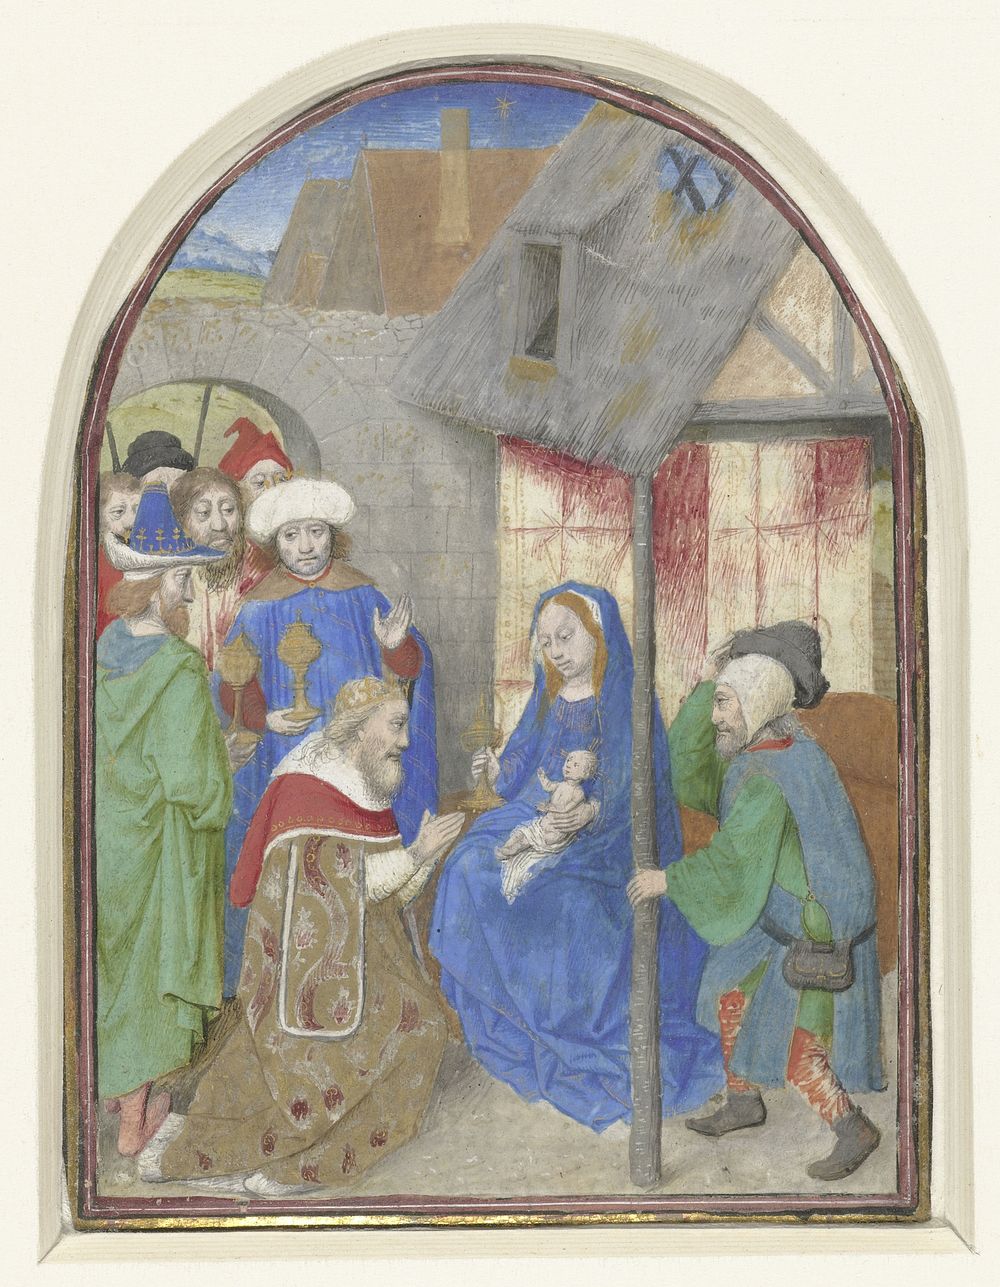 De aanbidding der koningen (c. 1460 - c. 1470) by Simon Marmion